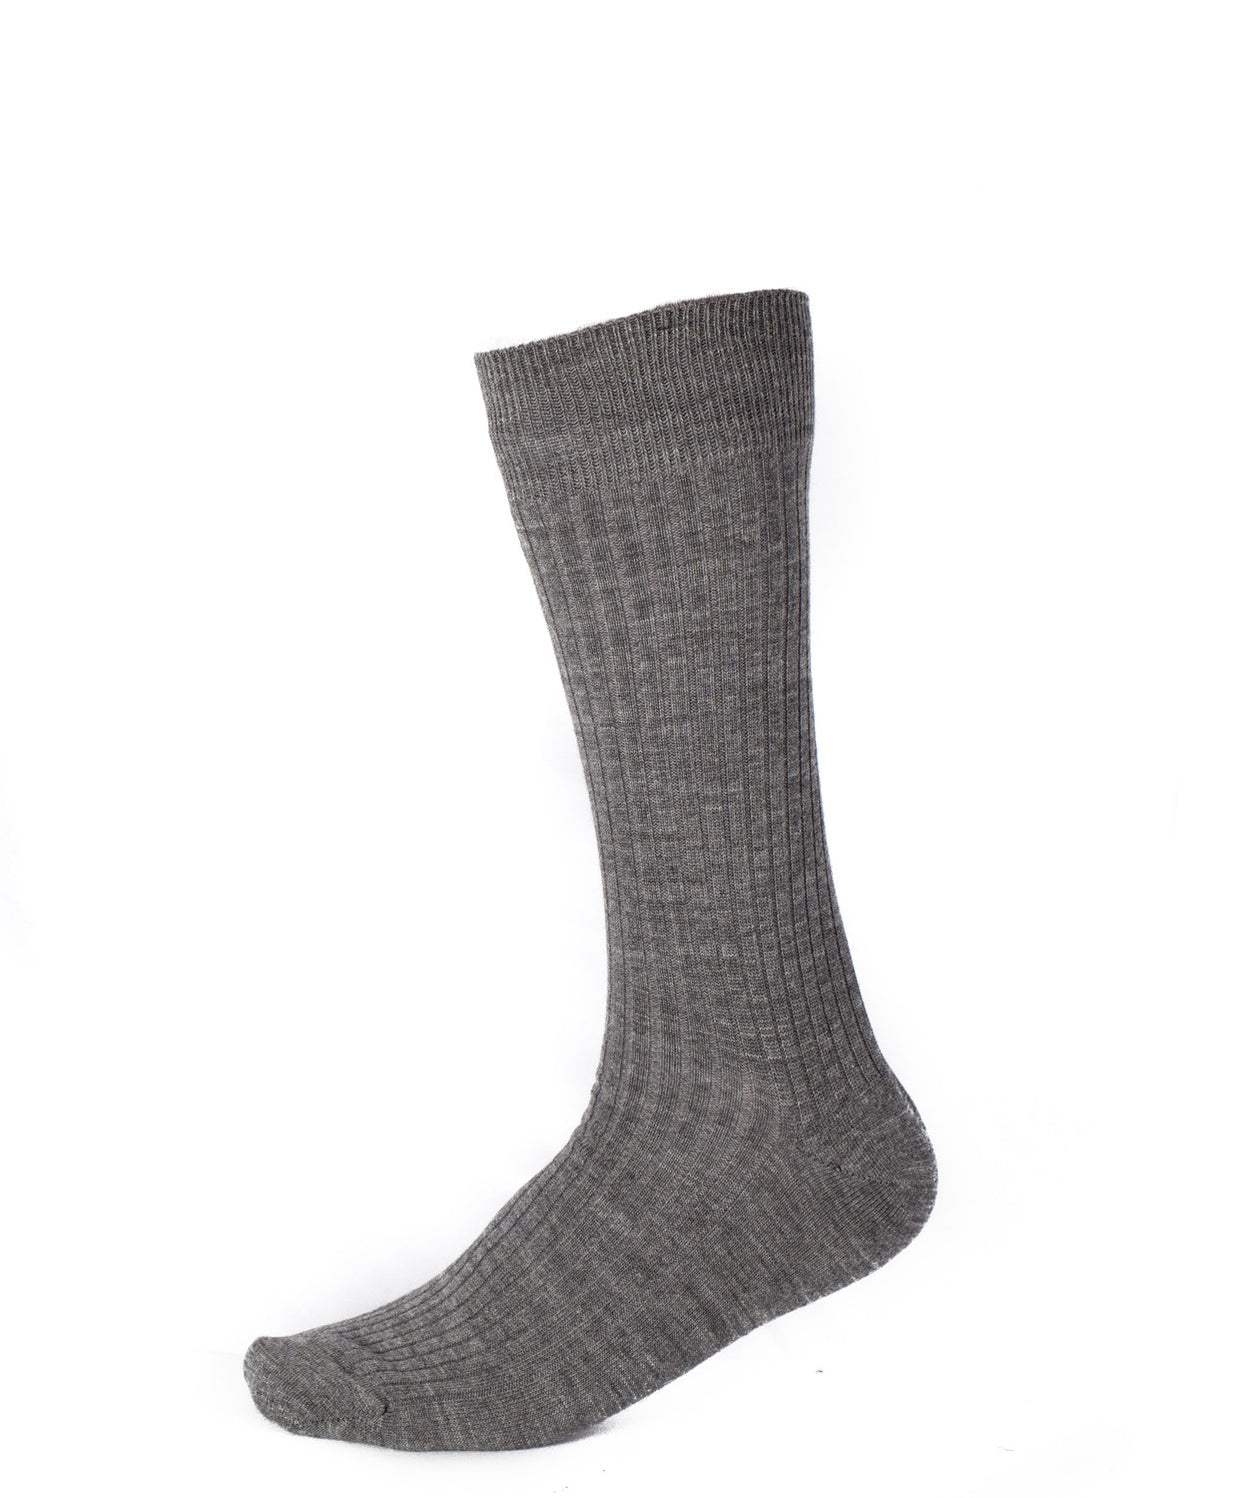 Pussyfoot Socks — socksforliving.com